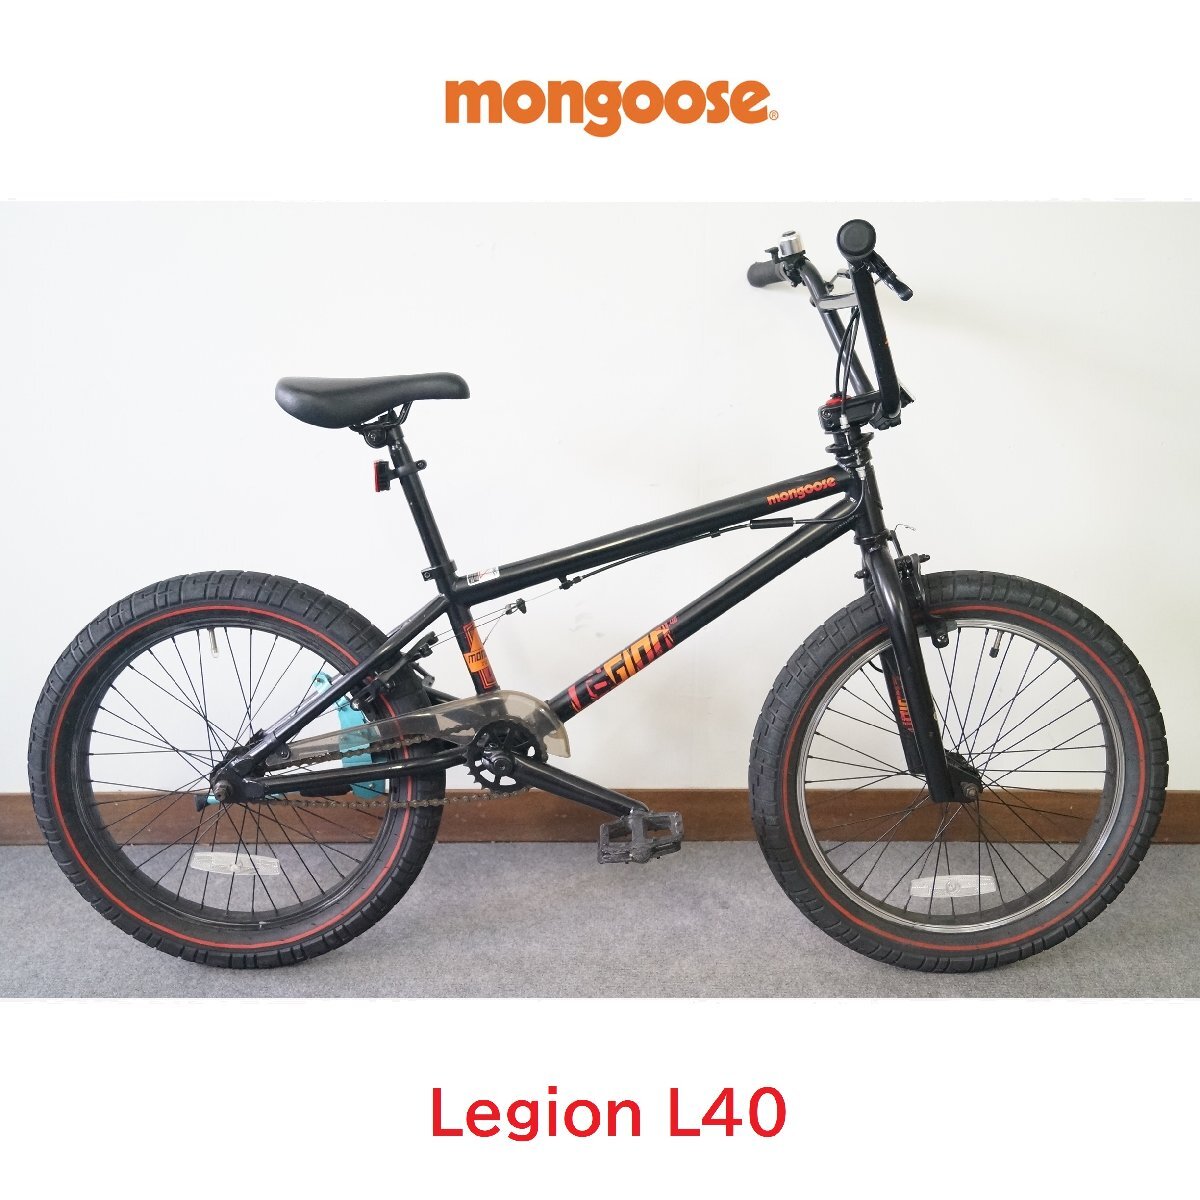 良品 BMX mongoose/マングース Legion L40 リージョンL40 ジャイロ式 20インチ フリースタイルの画像1